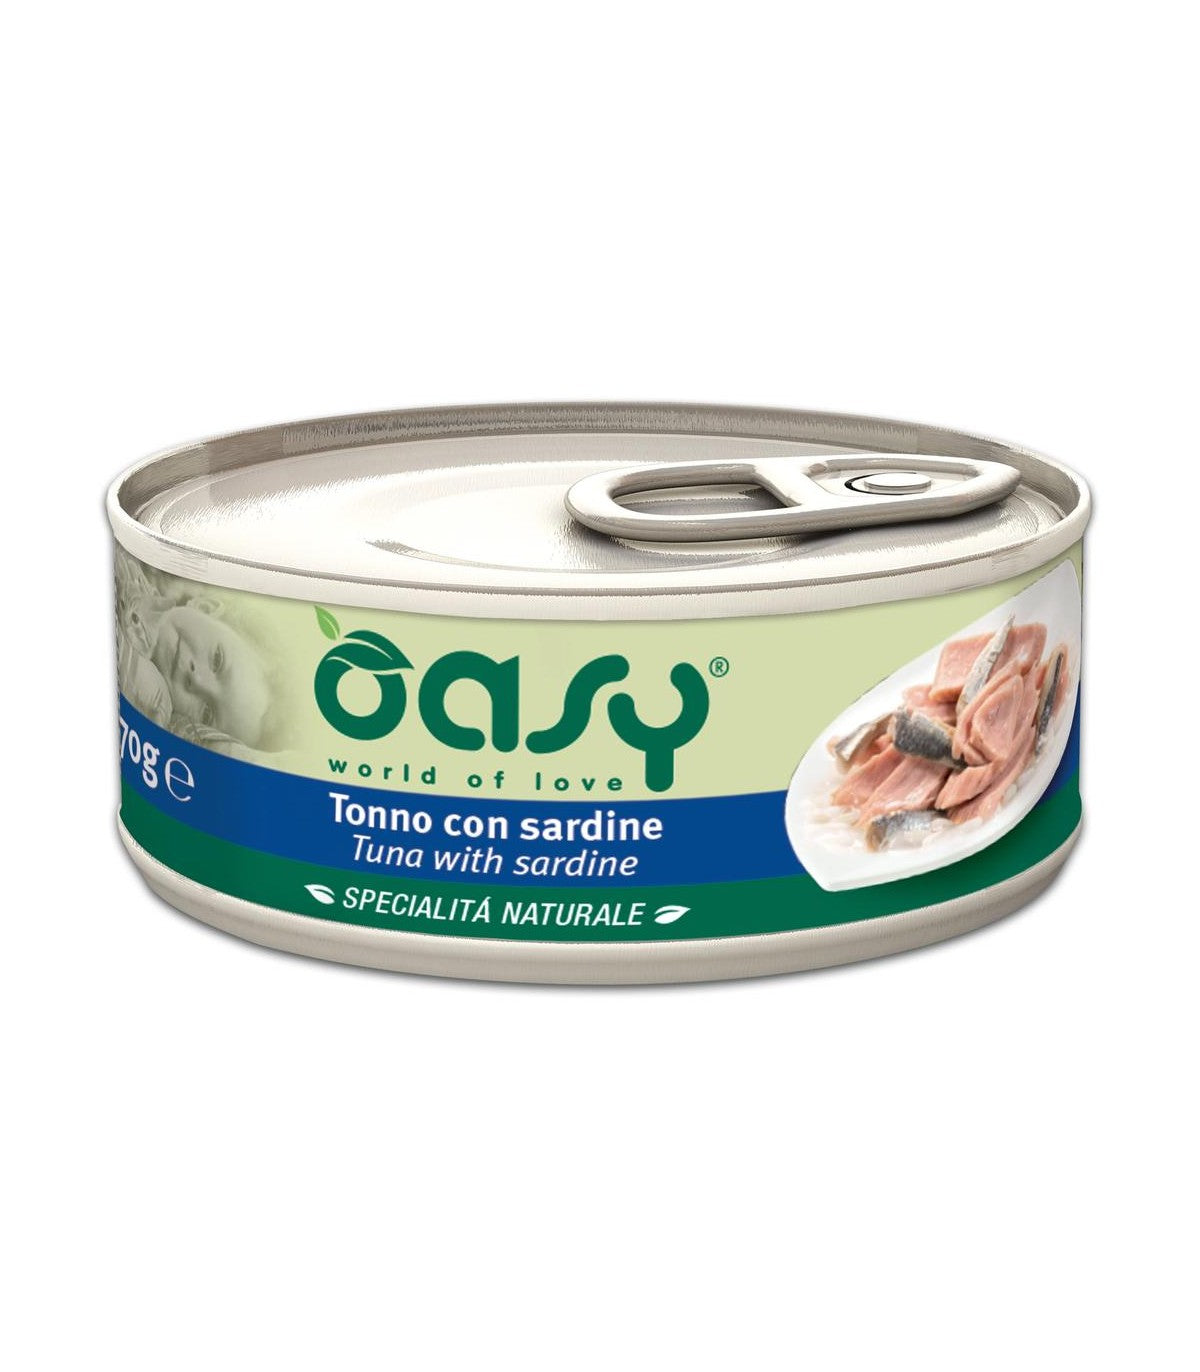 Oasy Specialità Naturale Tonno con Sardine 70gr